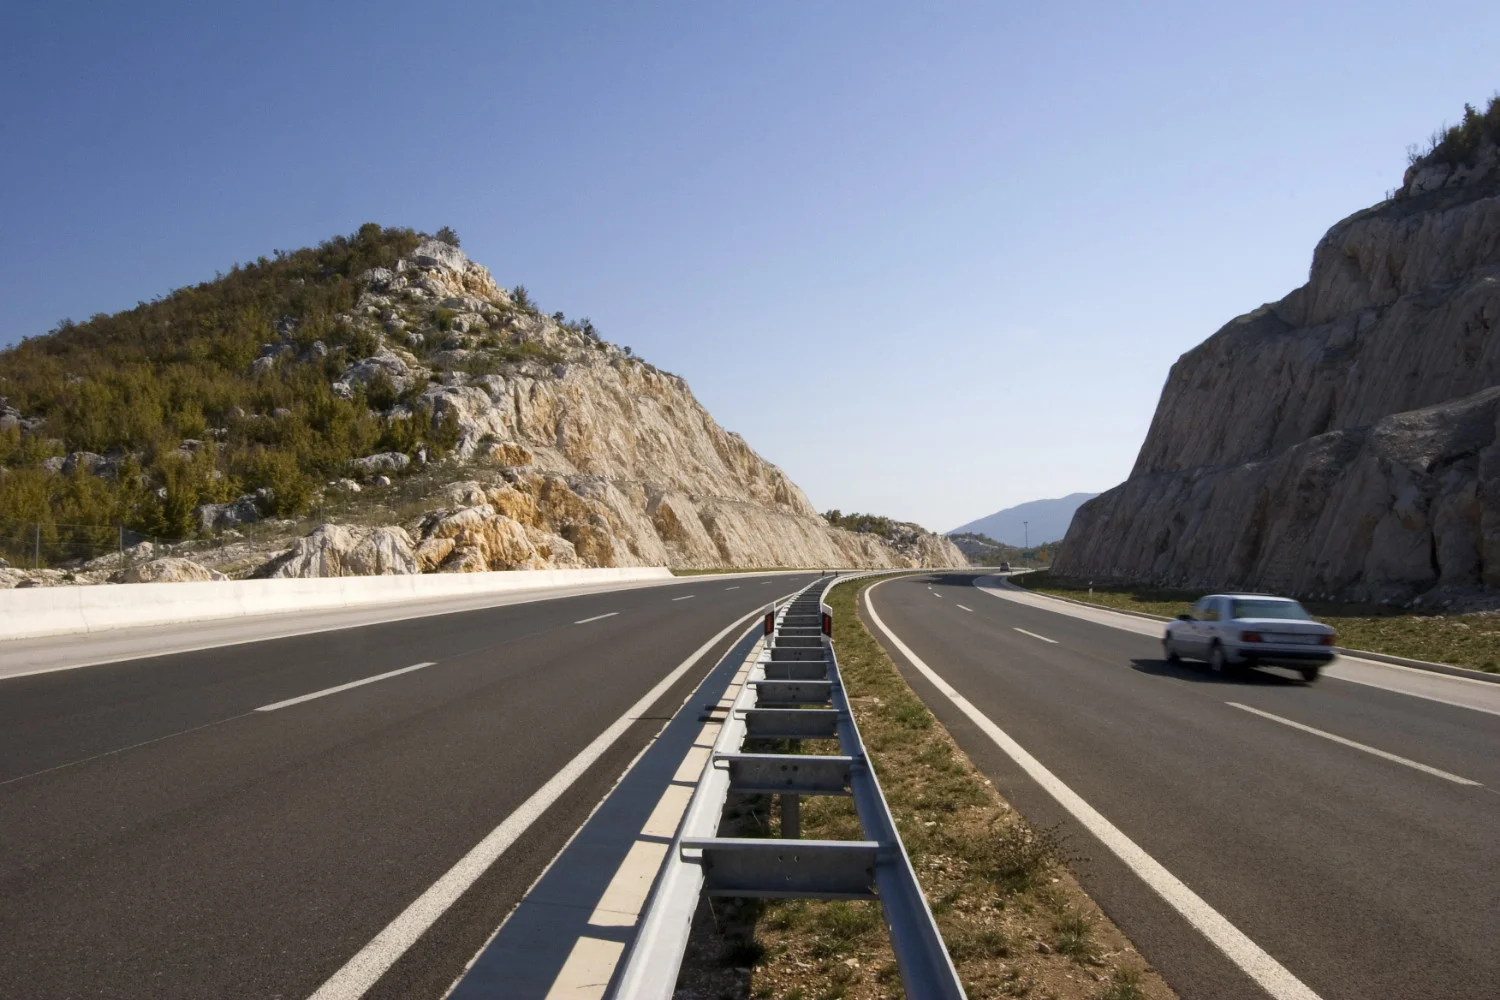 Les autoroutes croates sont connues pour leurs limitations de vitesse élevées. La limite de vitesse sur les autoroutes croates est de 130 km/h.